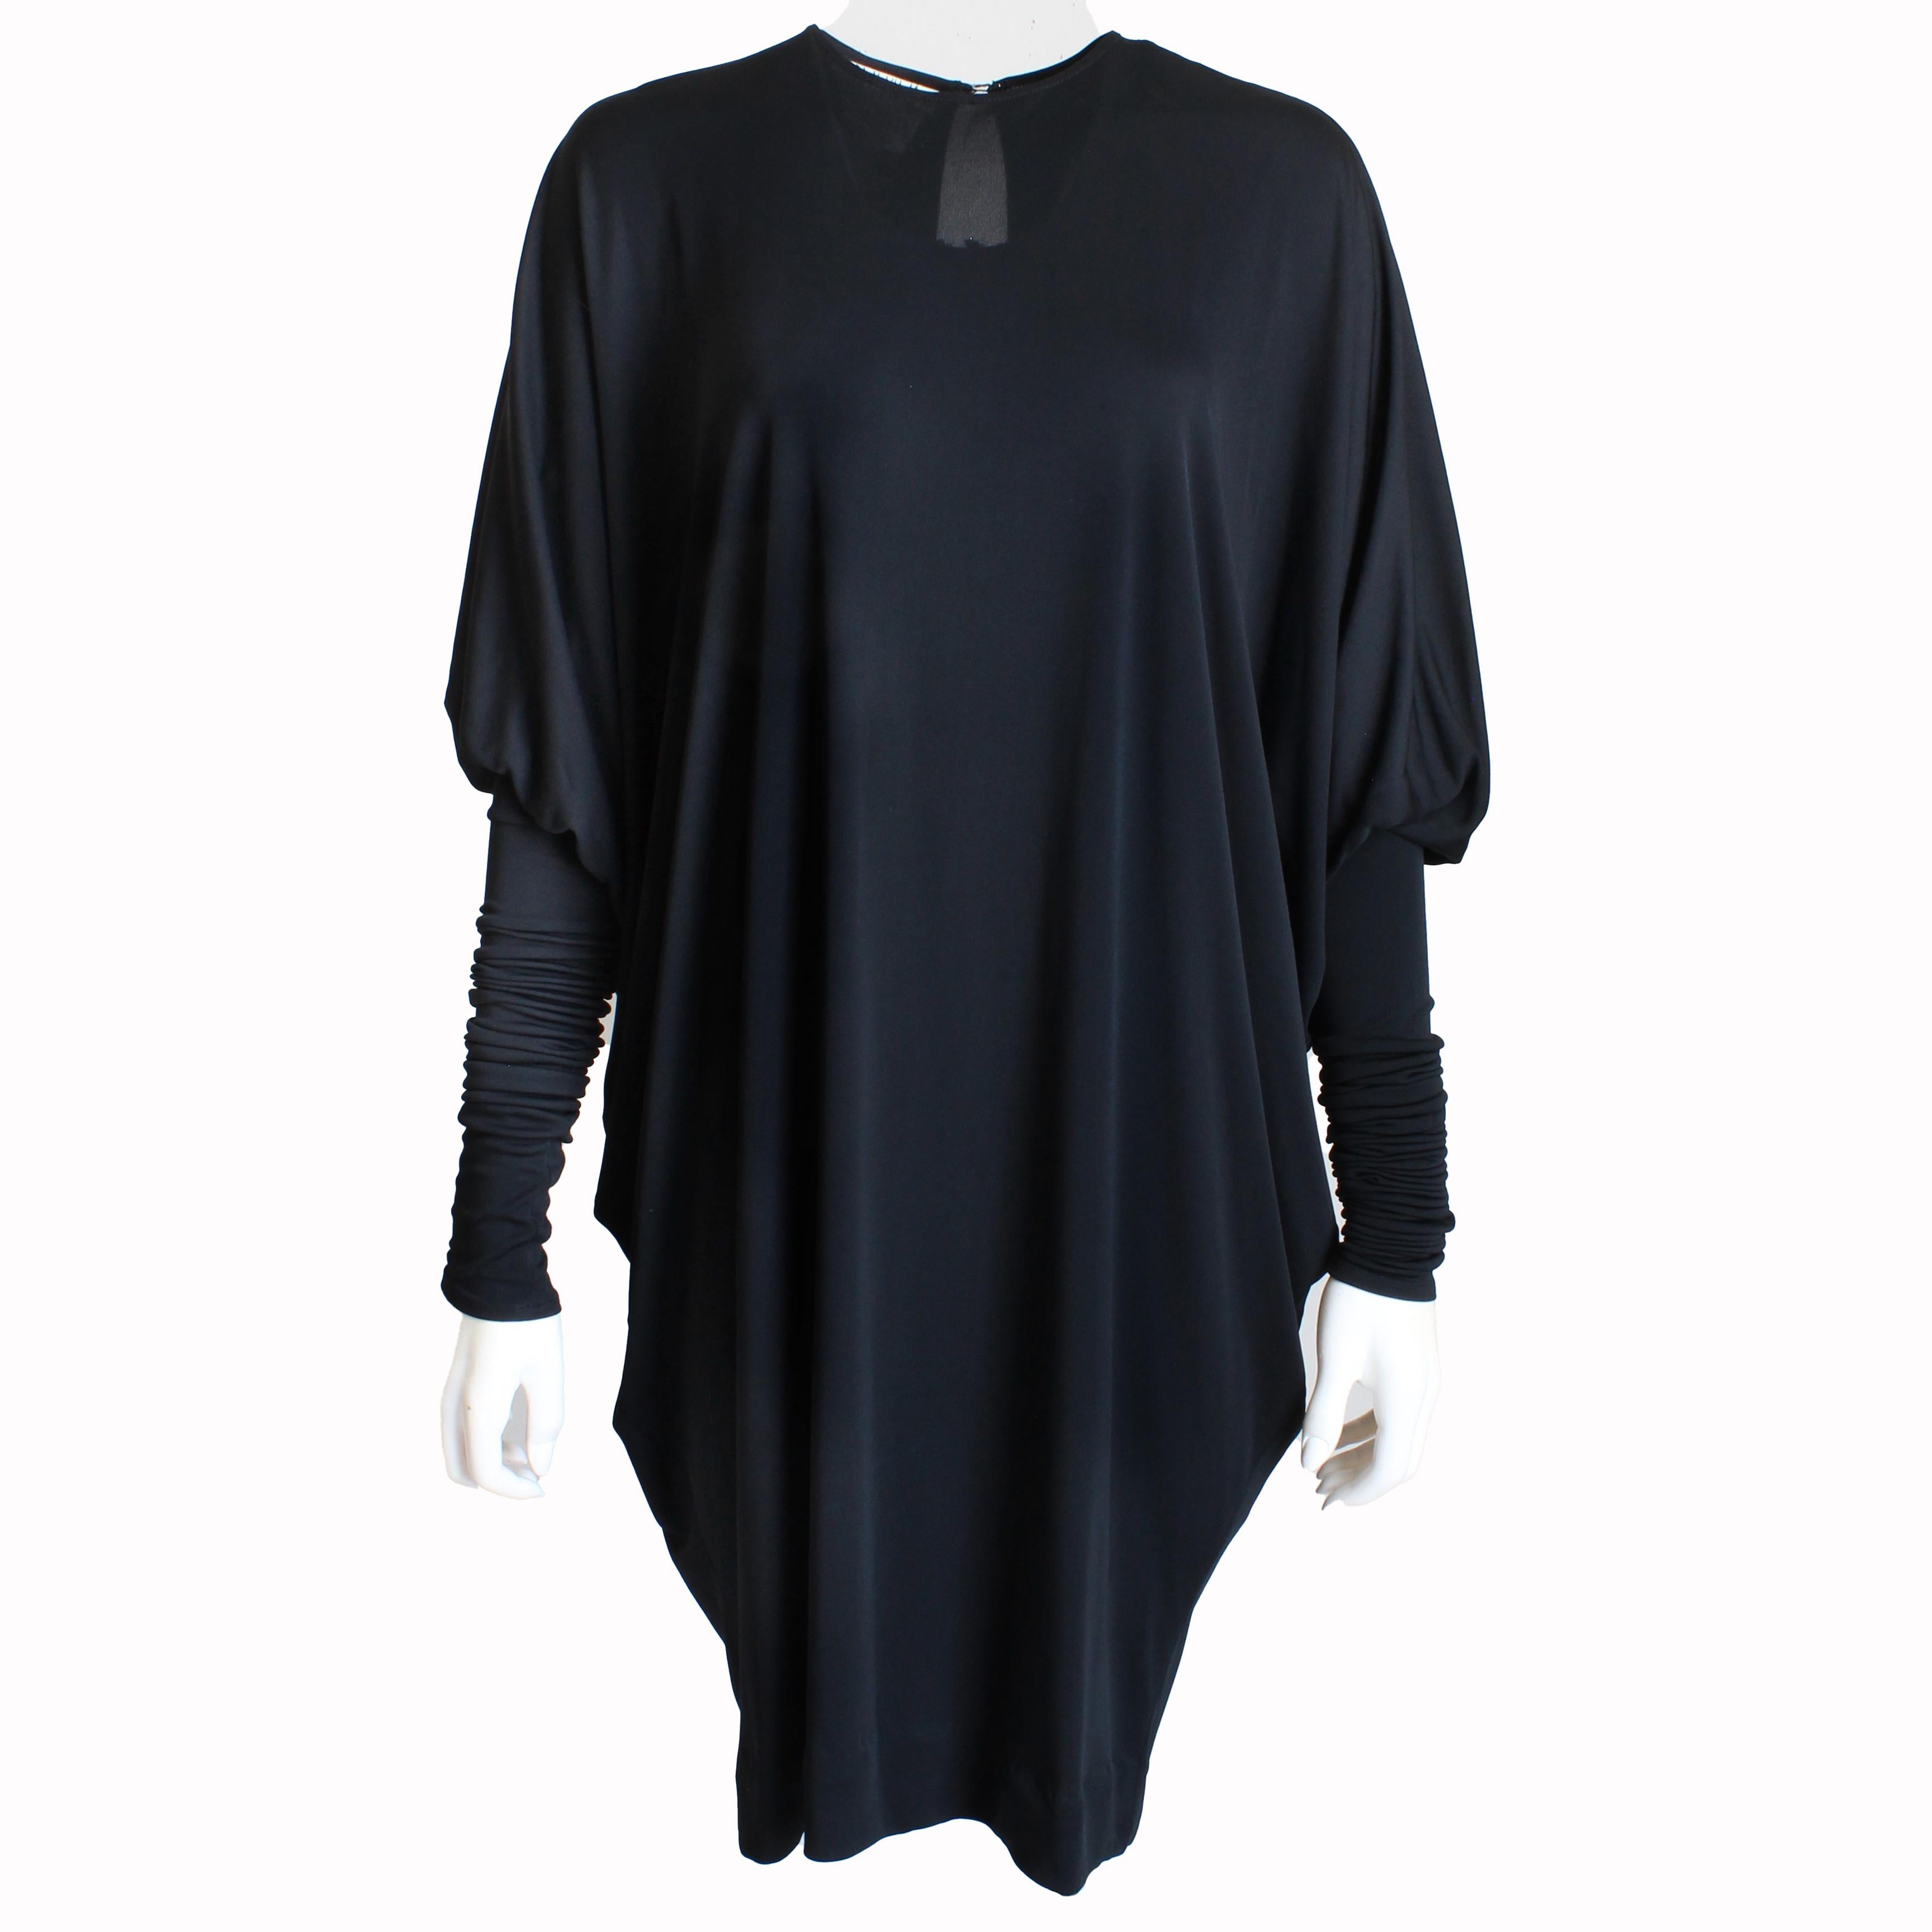 Gebrauchtes Vintage-Kleid von der fabelhaften Norma Kamali, wahrscheinlich aus den 1980er Jahren.  Es ist aus schwarzem Crêpe-Stoff (ohne Inhaltsetikett) gefertigt und verfügt über Dolman- oder Fledermausärmel sowie dehnbare Schlauchärmel, die hoch-